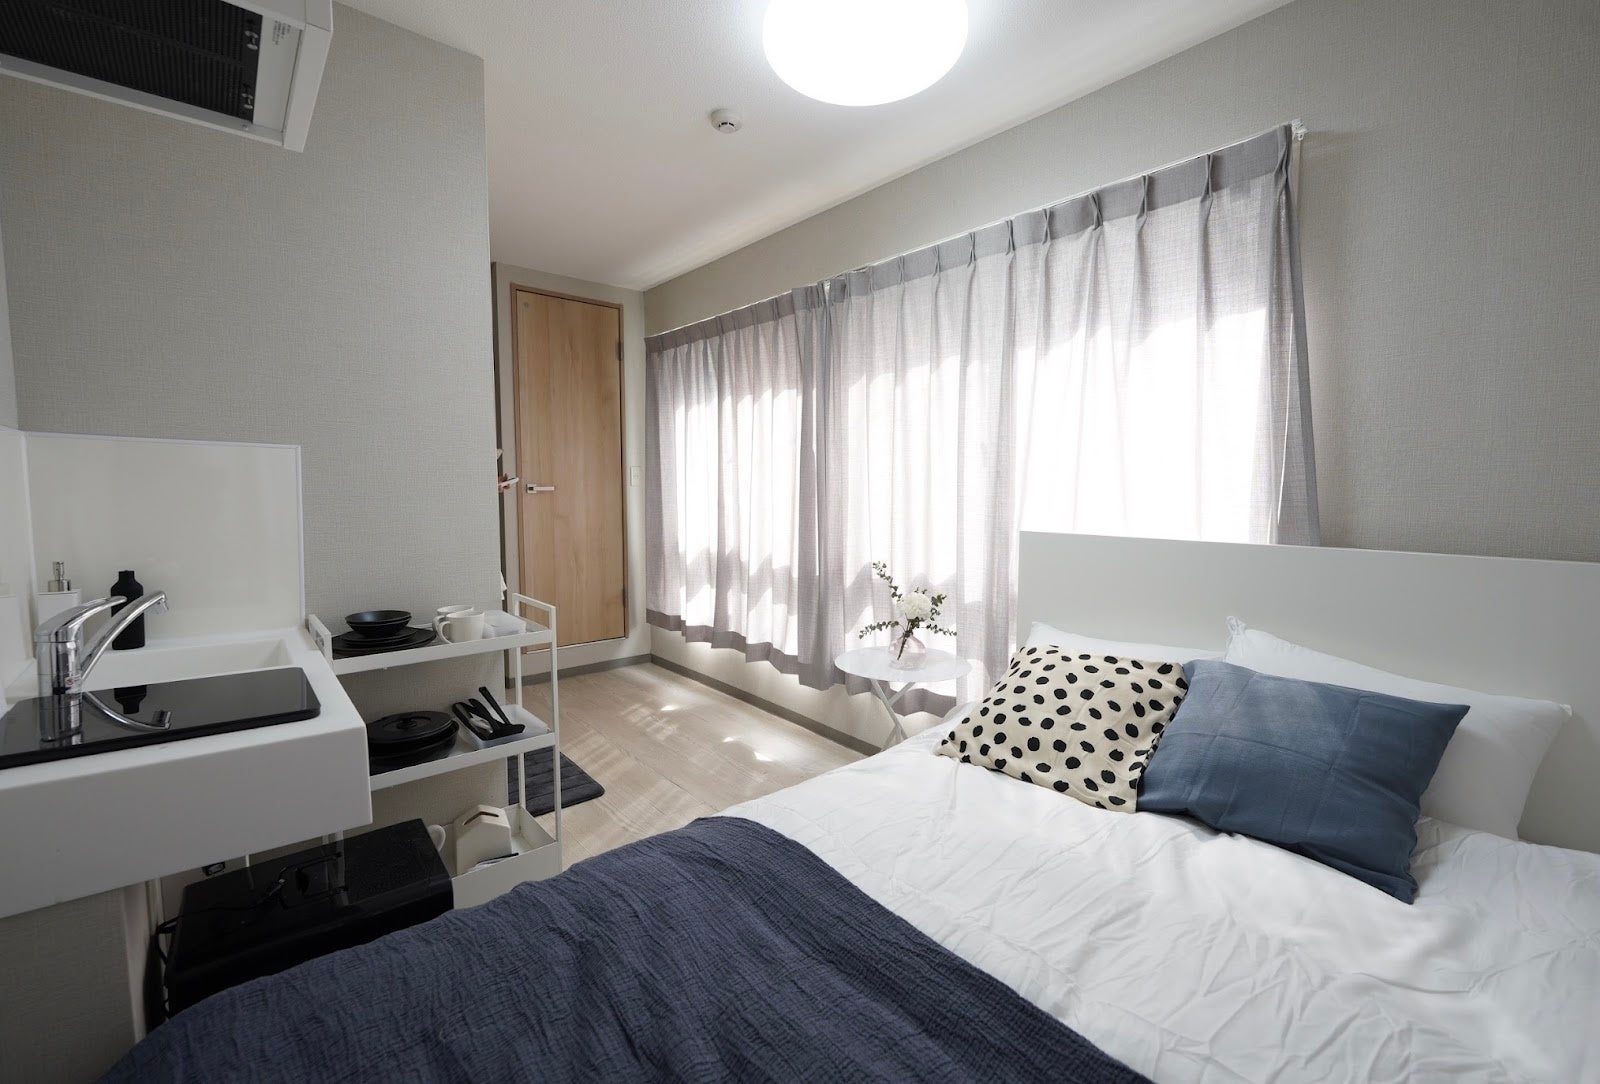 住んだ分だけの “リレント” 家賃、家具・インフラ完備の「unito」新たに「unito渋谷神泉」「unito蔵前」の2棟オープンのサブ画像5